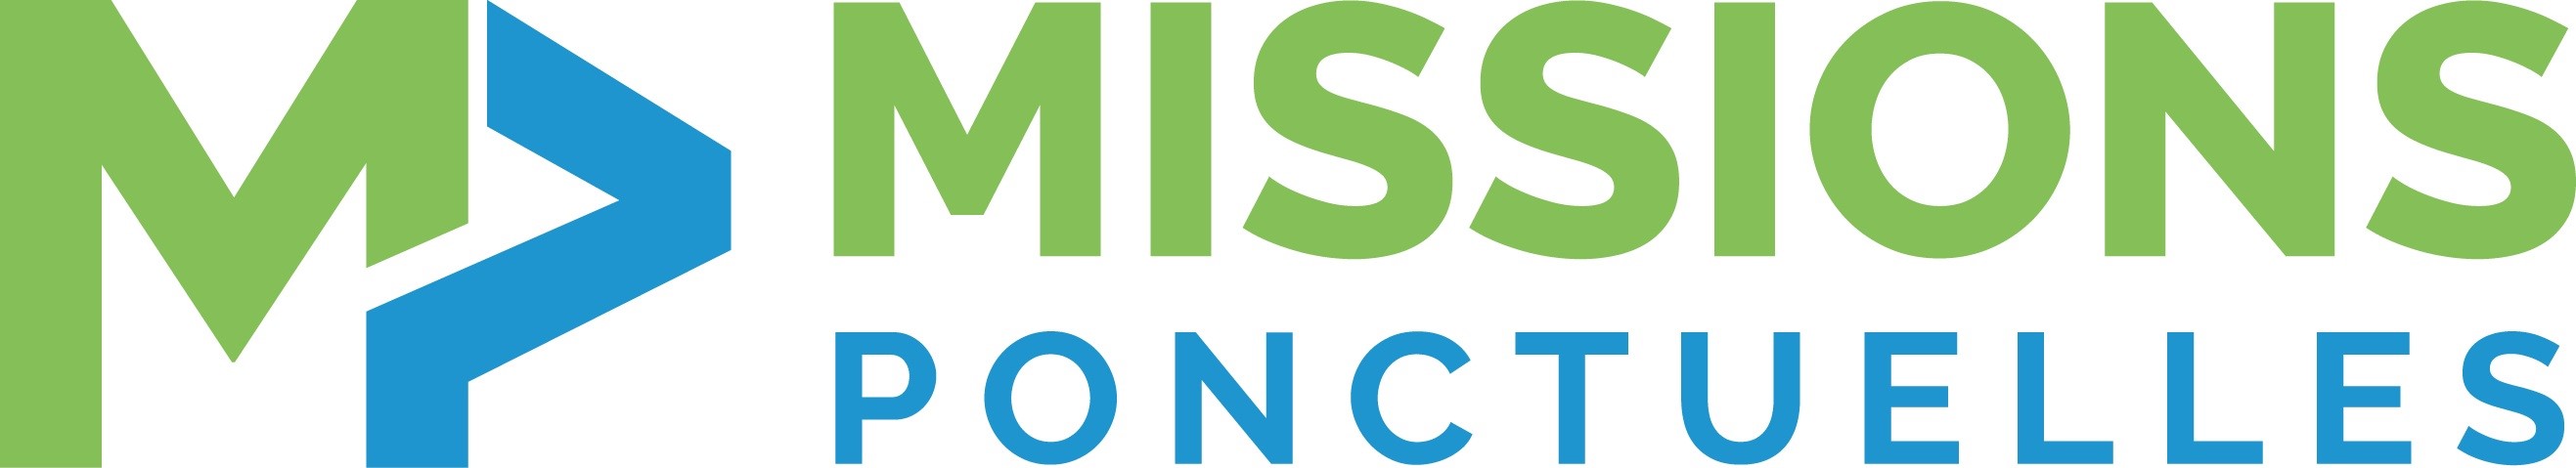 MissionsPonctuelles.net : La plateforme de collaboration professionnelle